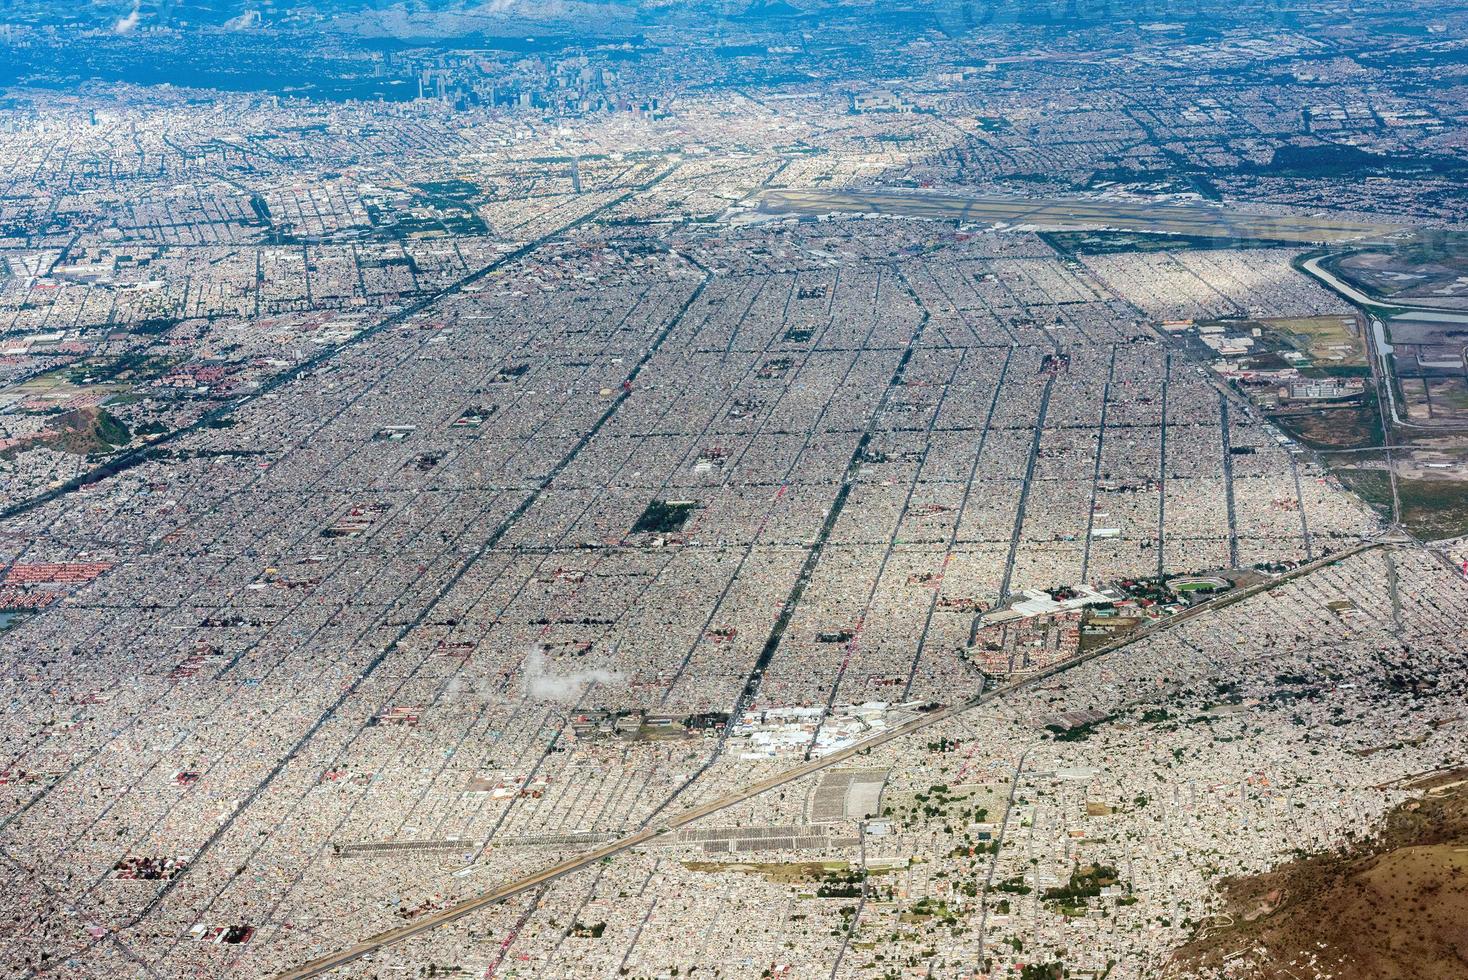 mexique ville vue aérienne paysage urbain photo